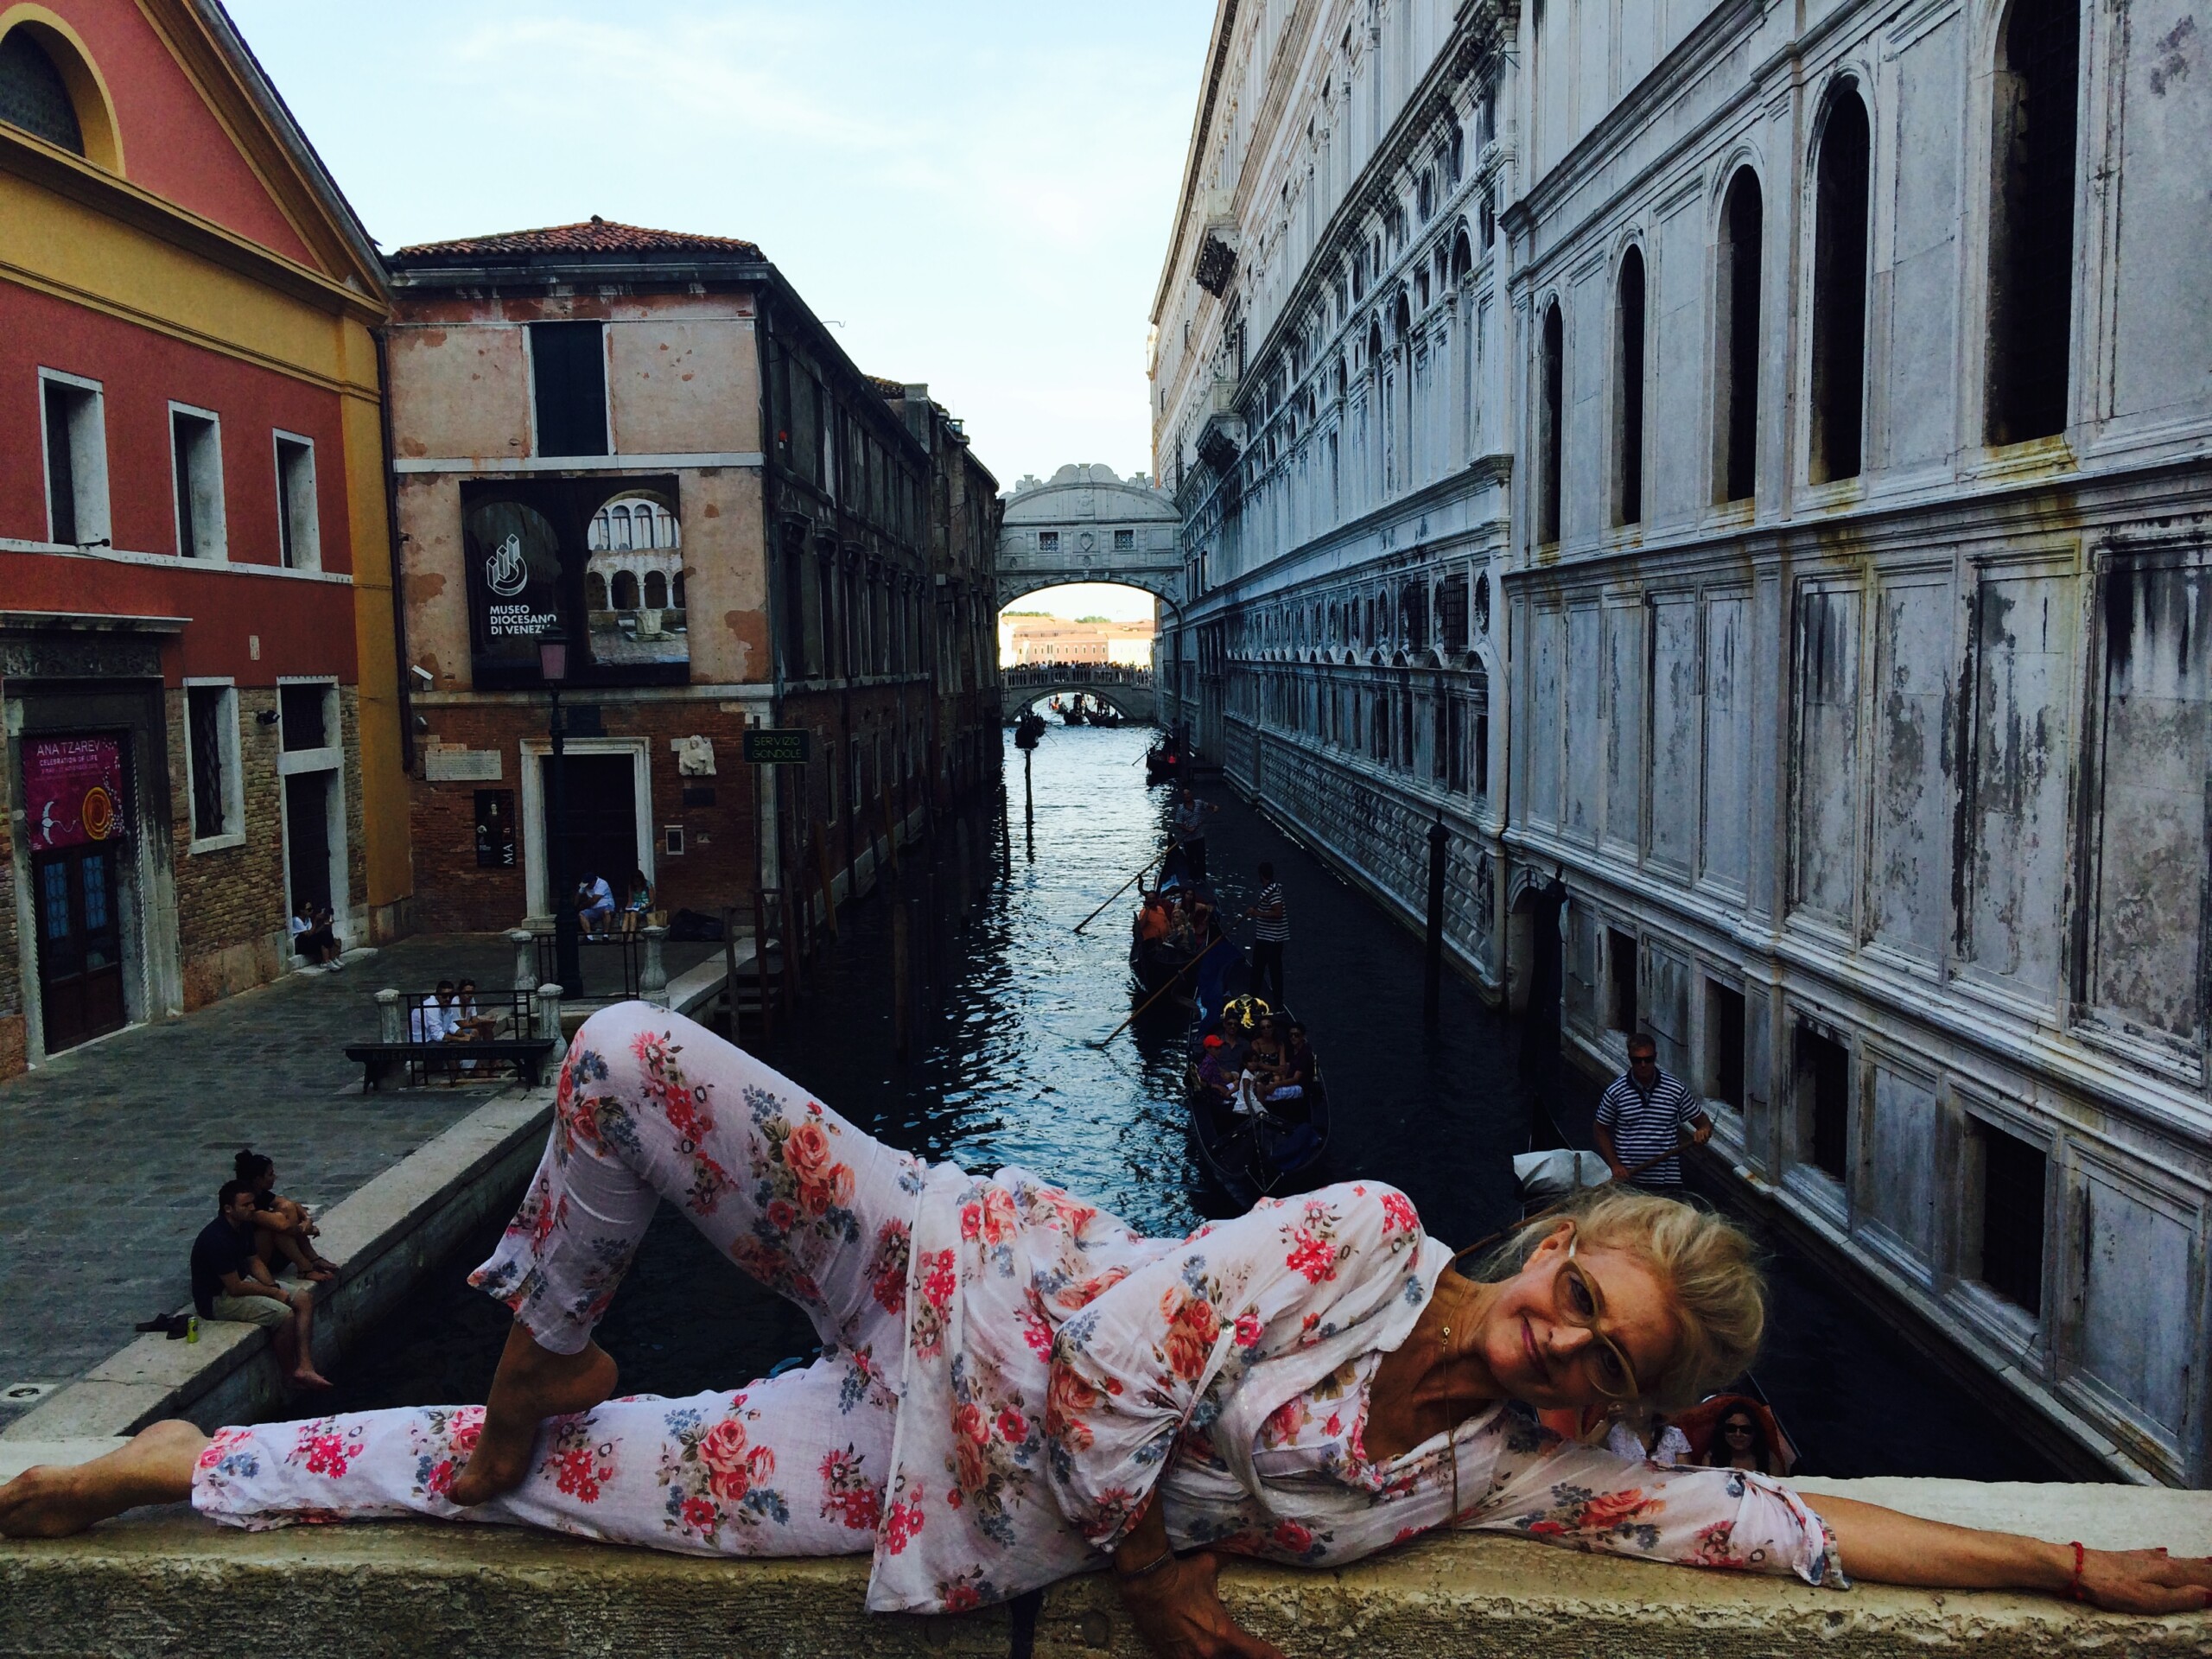 Camille Rommett on Venice Bridge Overlooking Waterbody